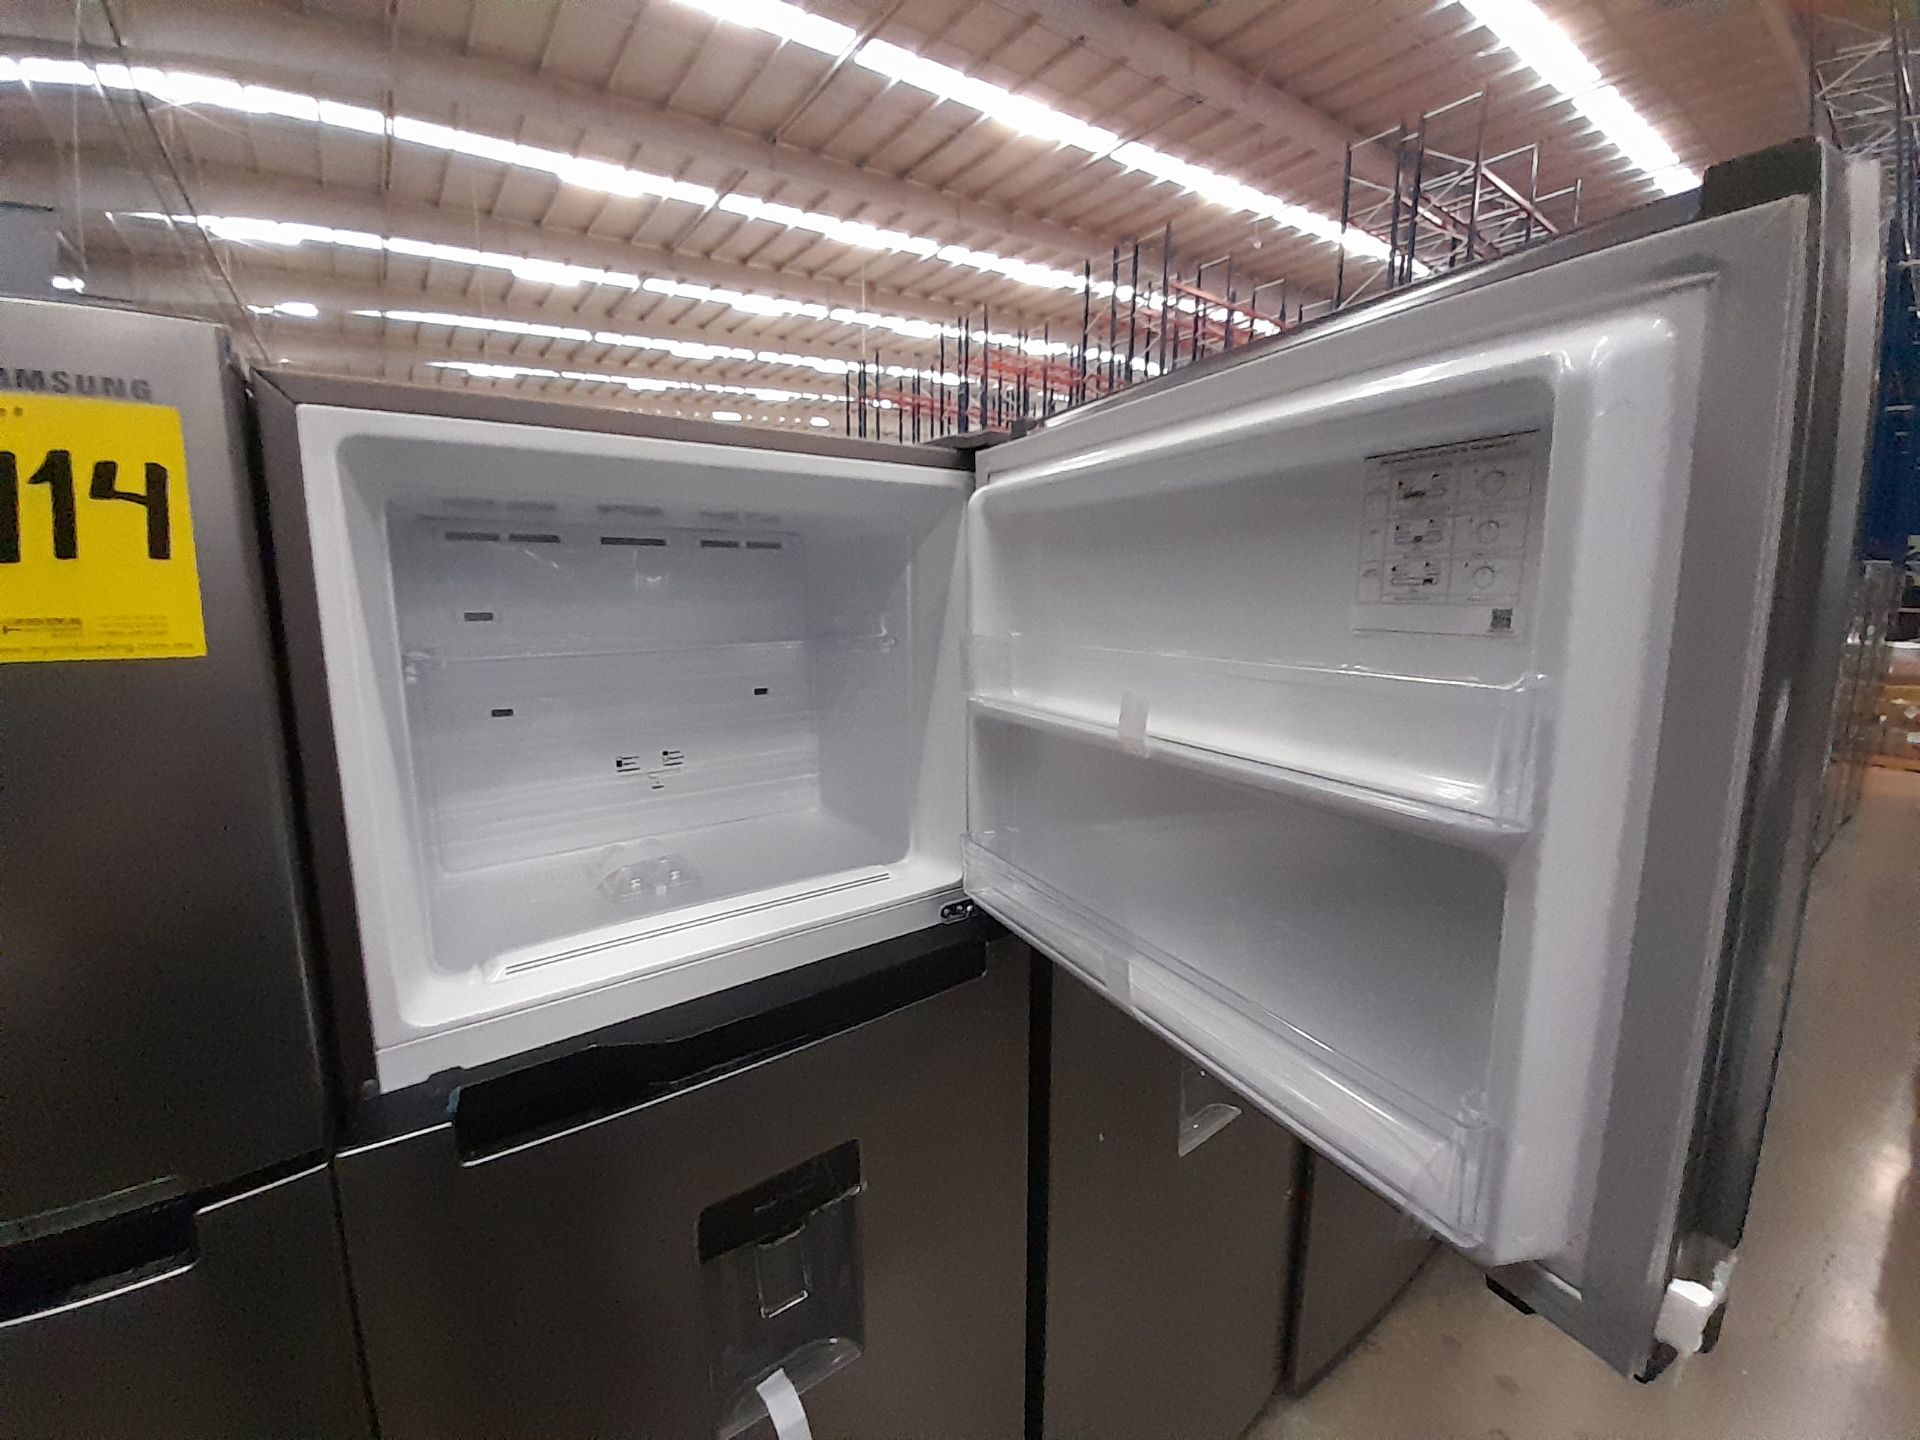 Lote de 2 refrigeradores contiene: 1 refrigerador Marca SAMSUNG, Modelo RT38A57IJS9, Serie 02691M, - Image 4 of 8